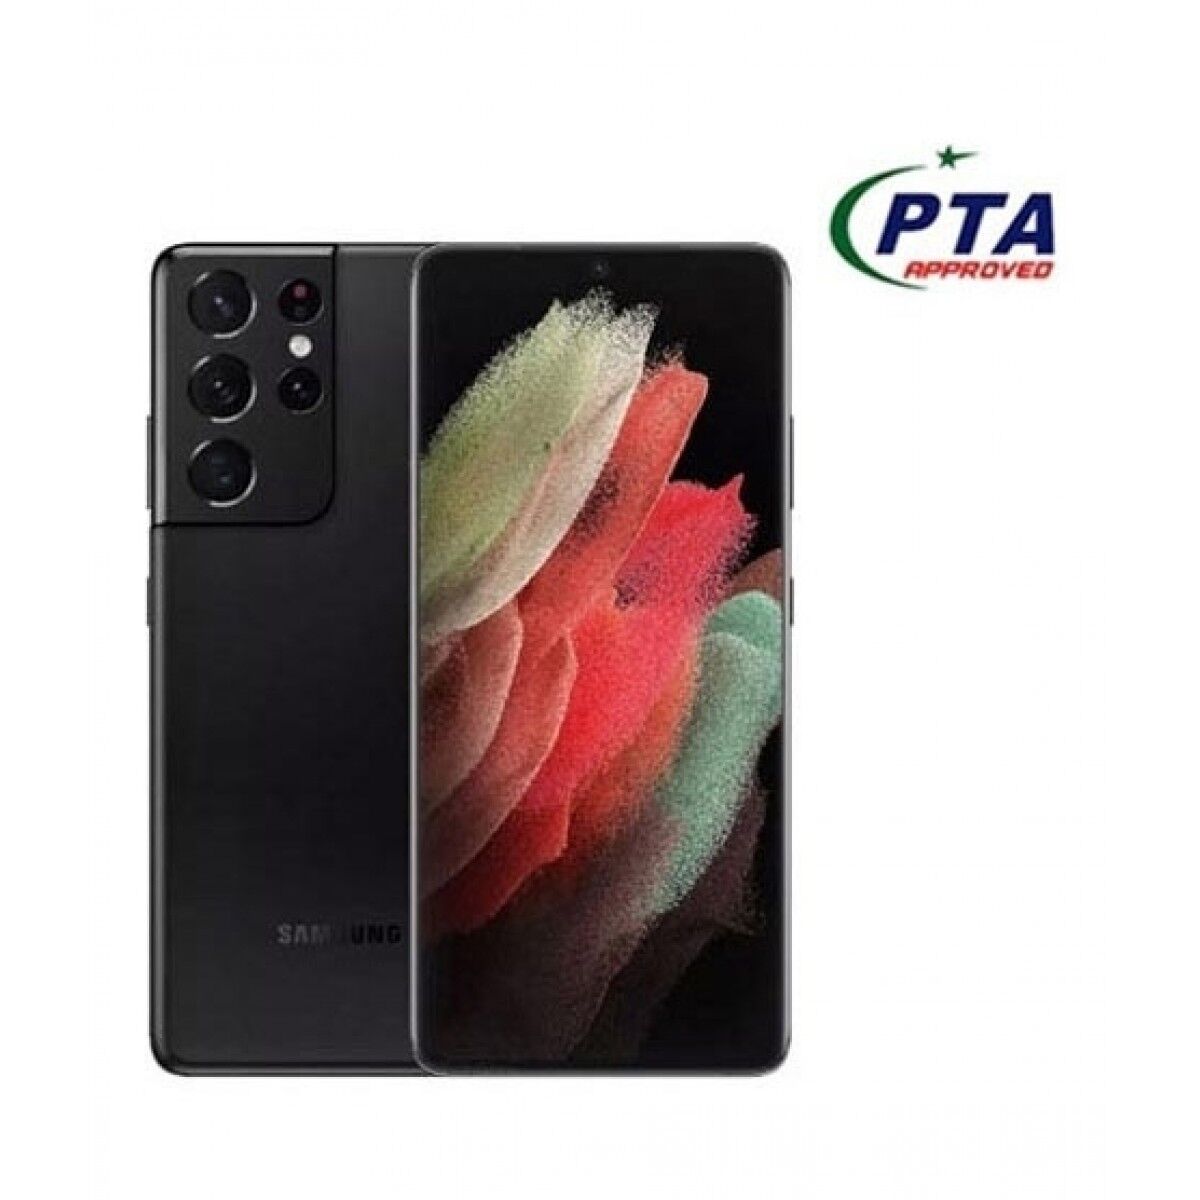 Samsung Galaxy S21 Ultra 256GB 12GB 5G Dual Sim Phantom Black   Official Warranty